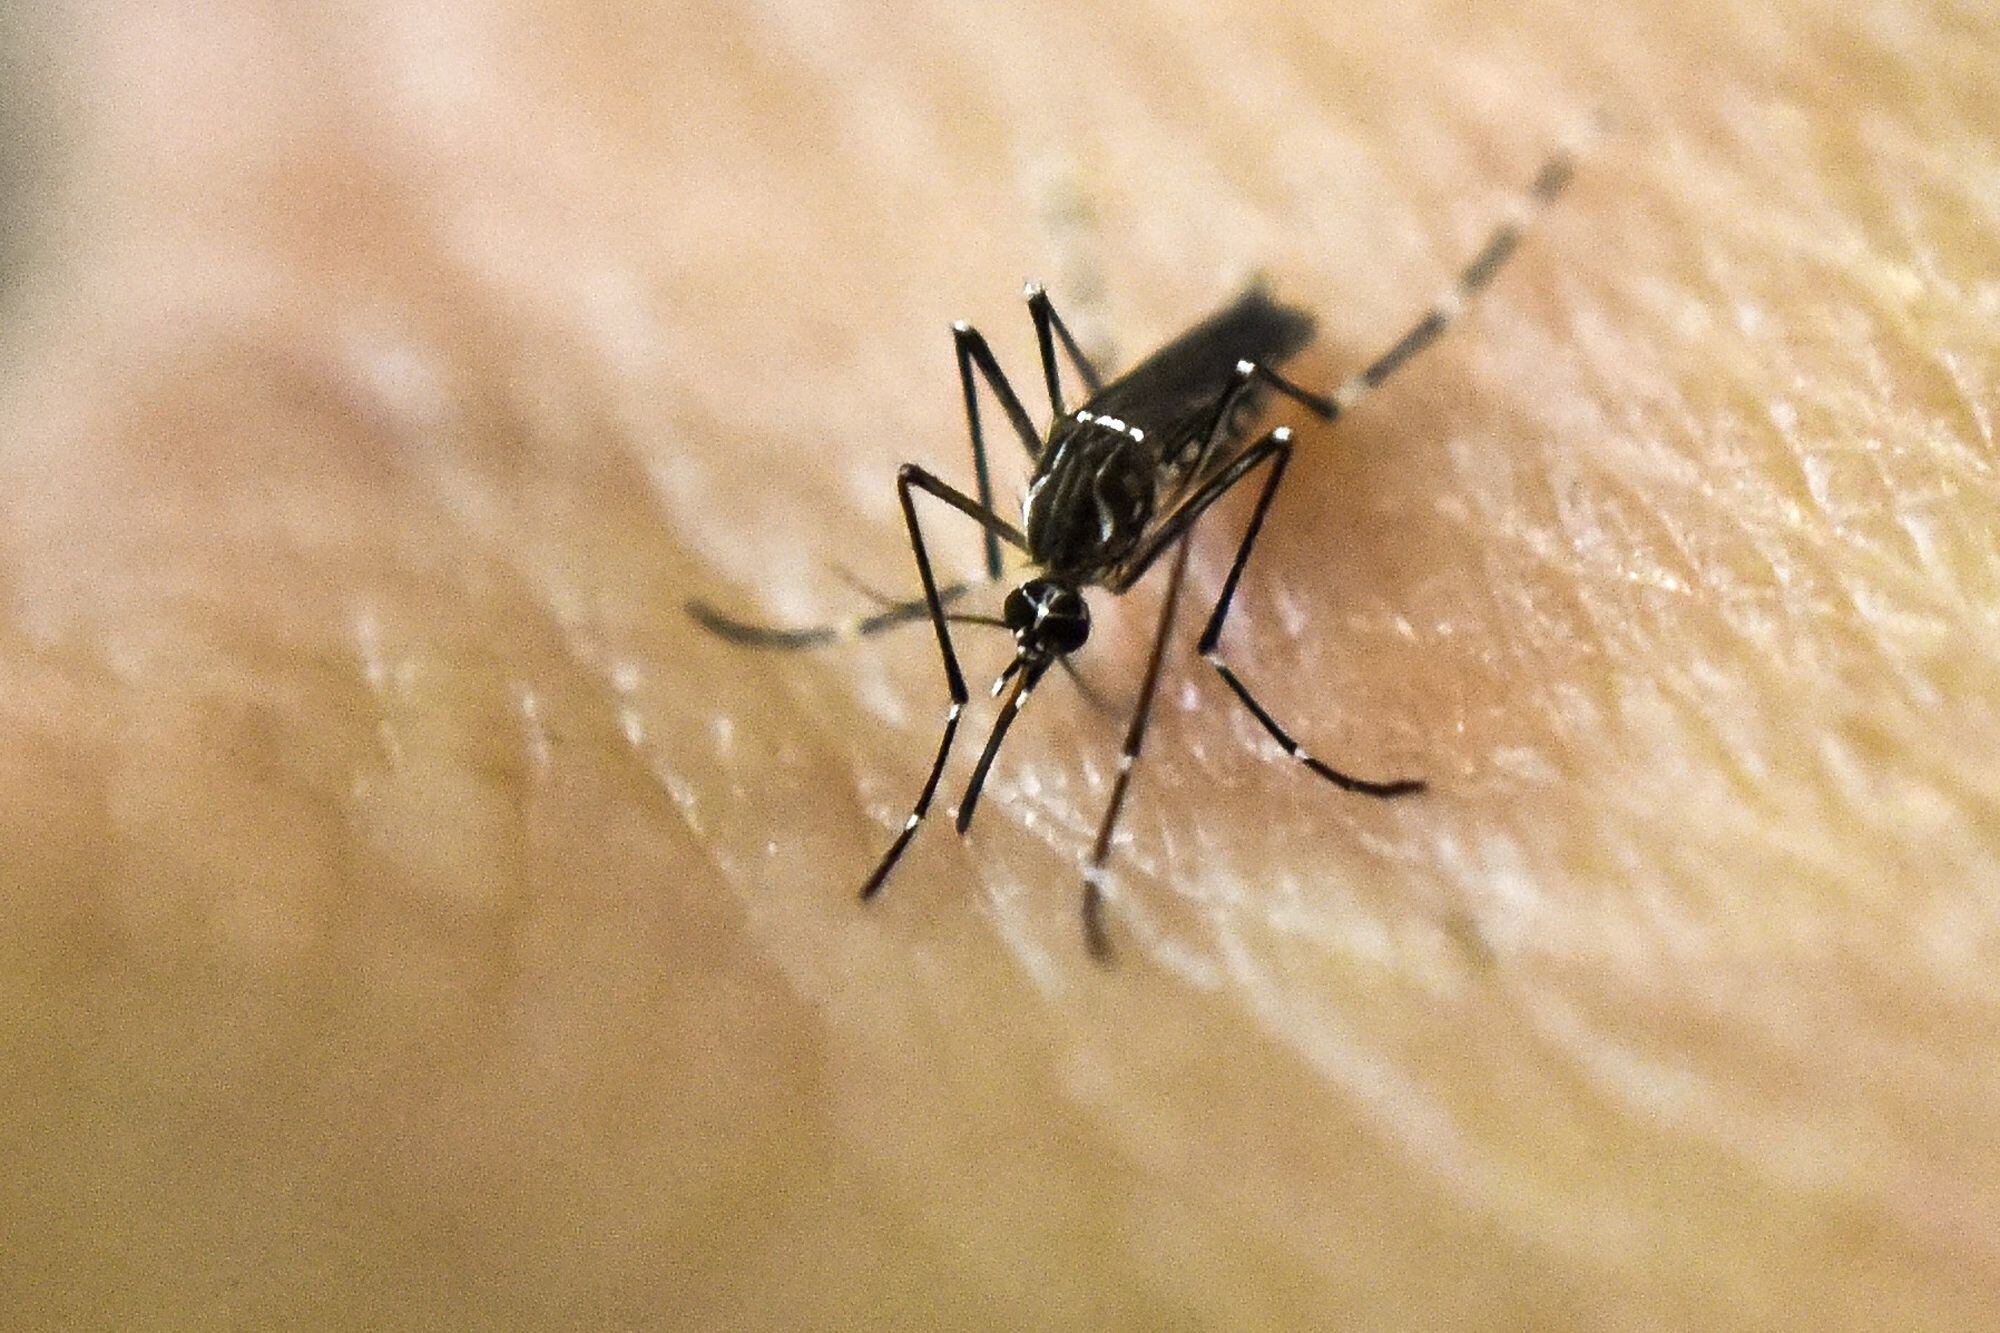 El contagio de dengue comienza por una picadura del mosquito Aedes aegipty infectado 